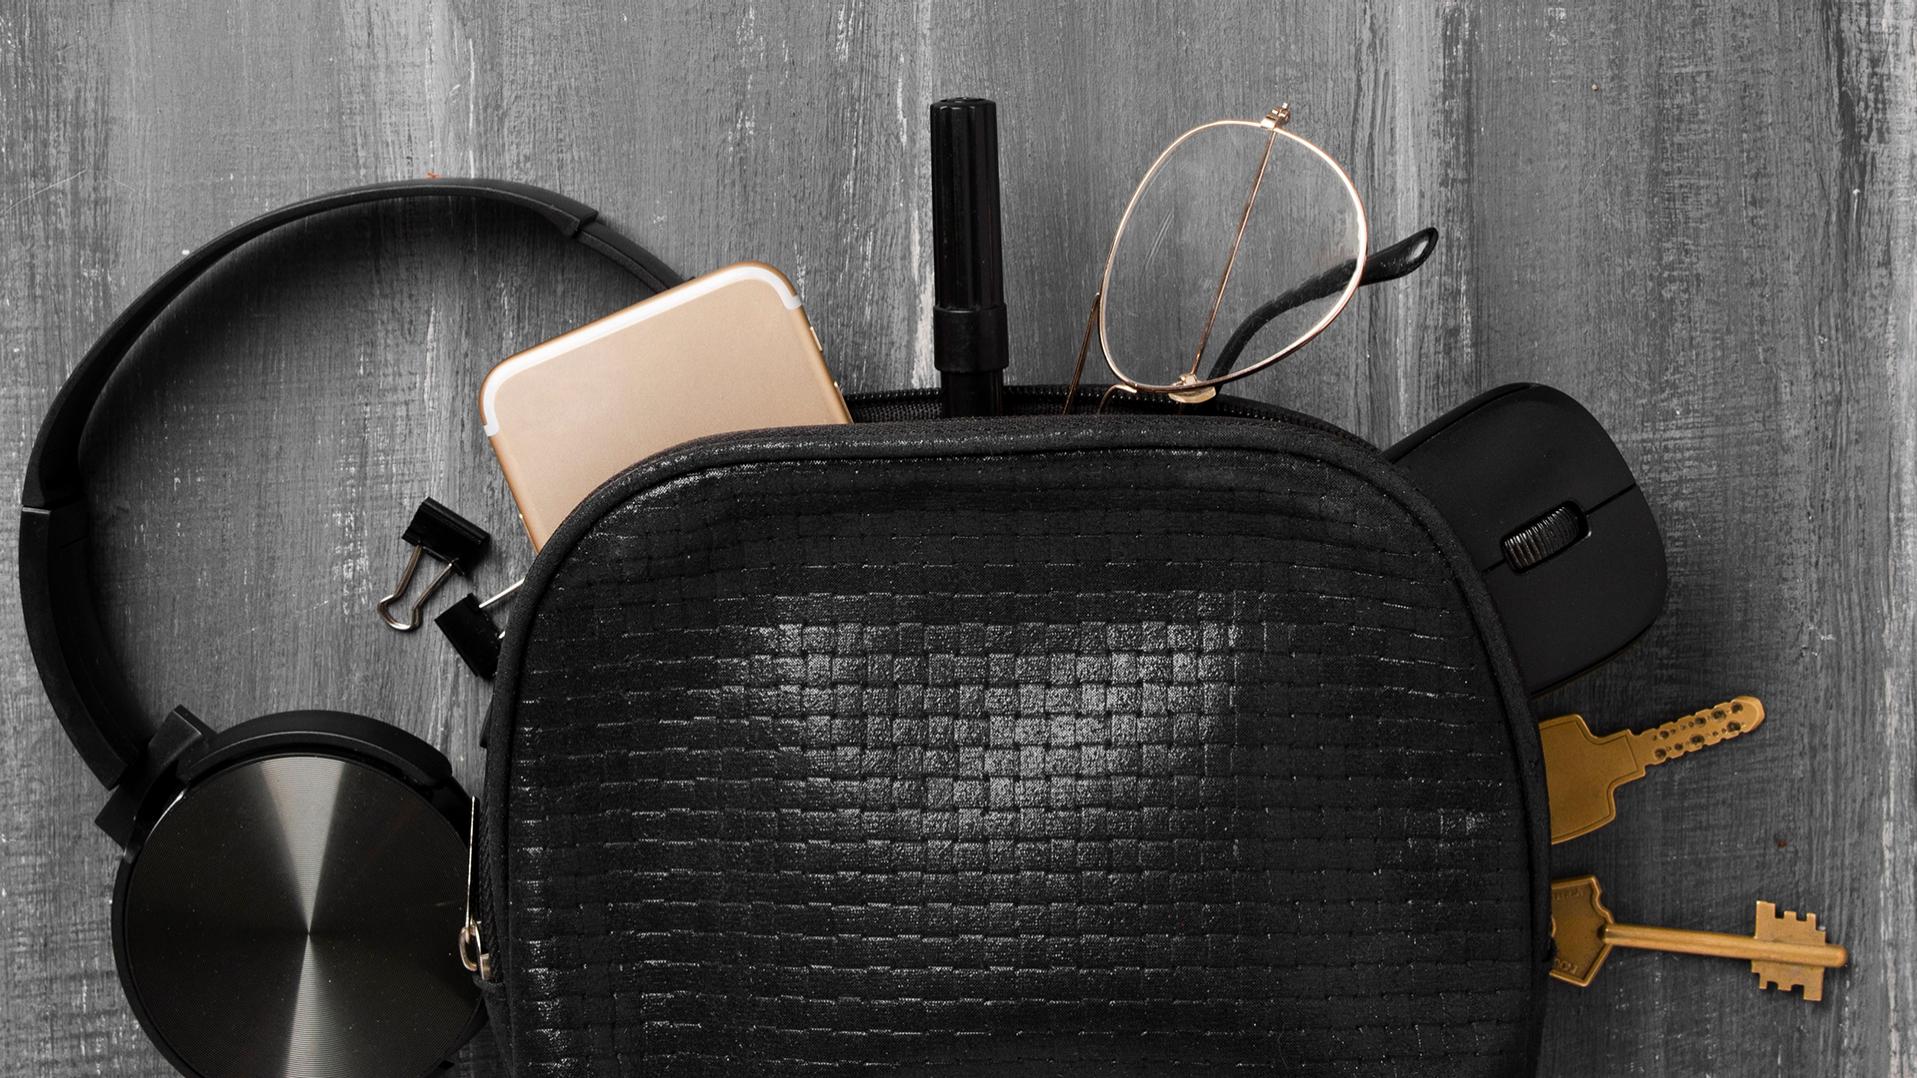 Un petit sac noir d’où sont sortis des écouteurs, un téléphone portable, des clés, des agrafes, un stylo, une souris d’ordinateur et des lunettes équipées de verres ZEISS avec un traitement DuraVision. Ces objets sont maintenant à moitié étalés sur le sol gris.